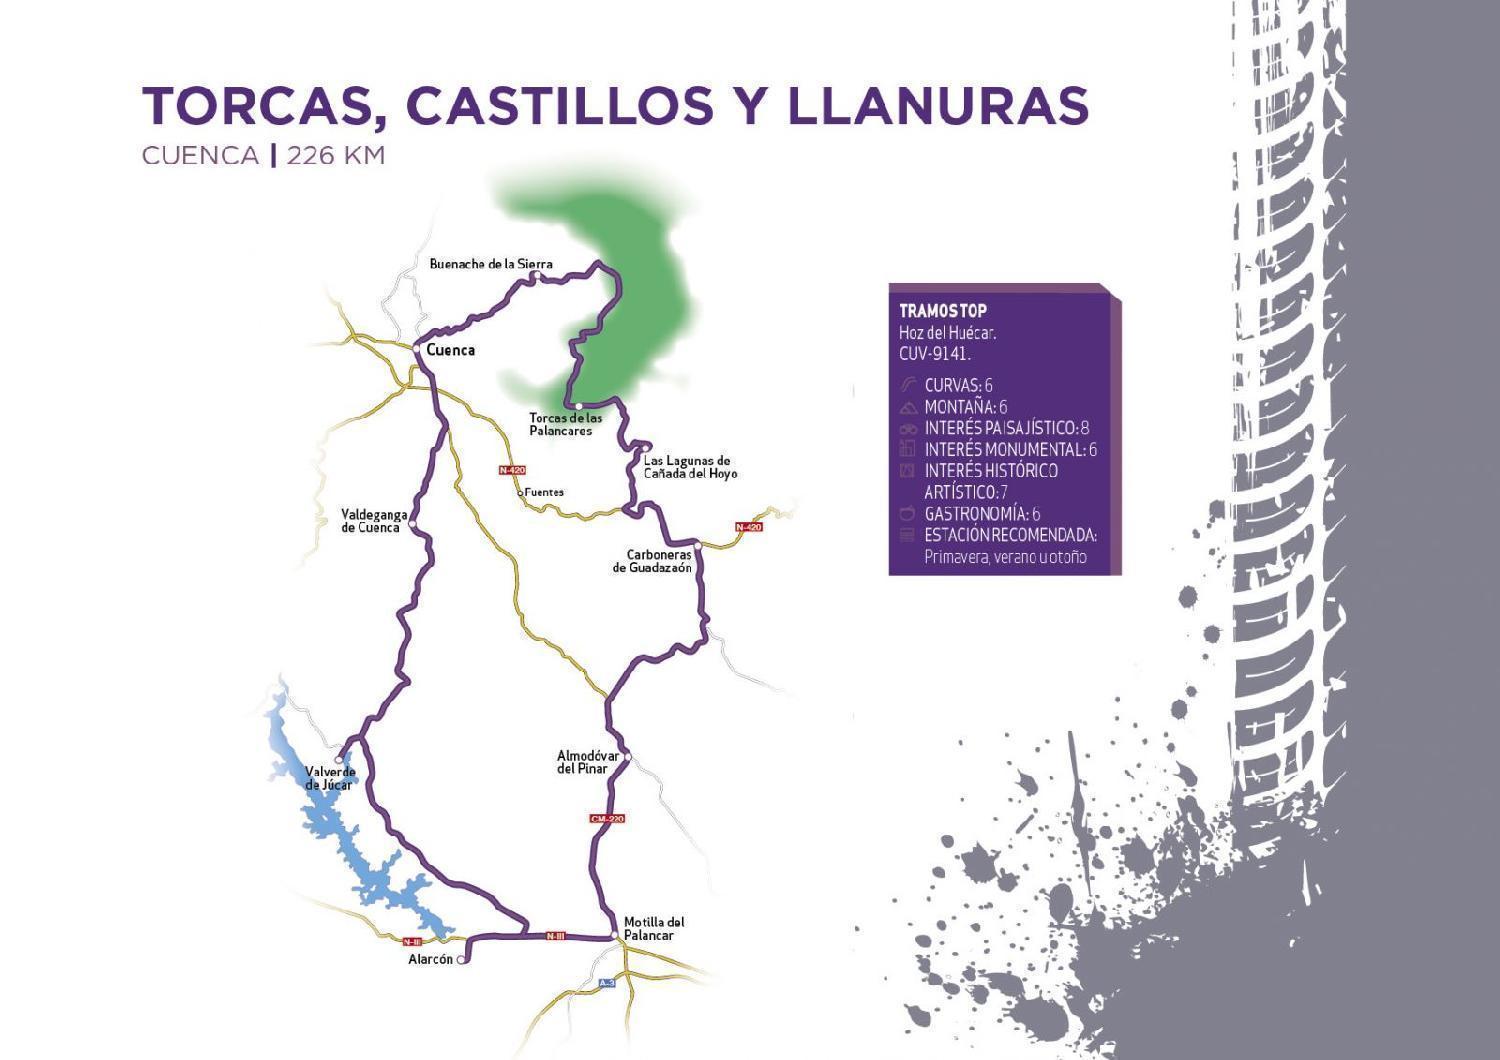 Mapa recorrido Torcas, castillos y Llanuras de Cuenca del libro 101 rutas en moto por España